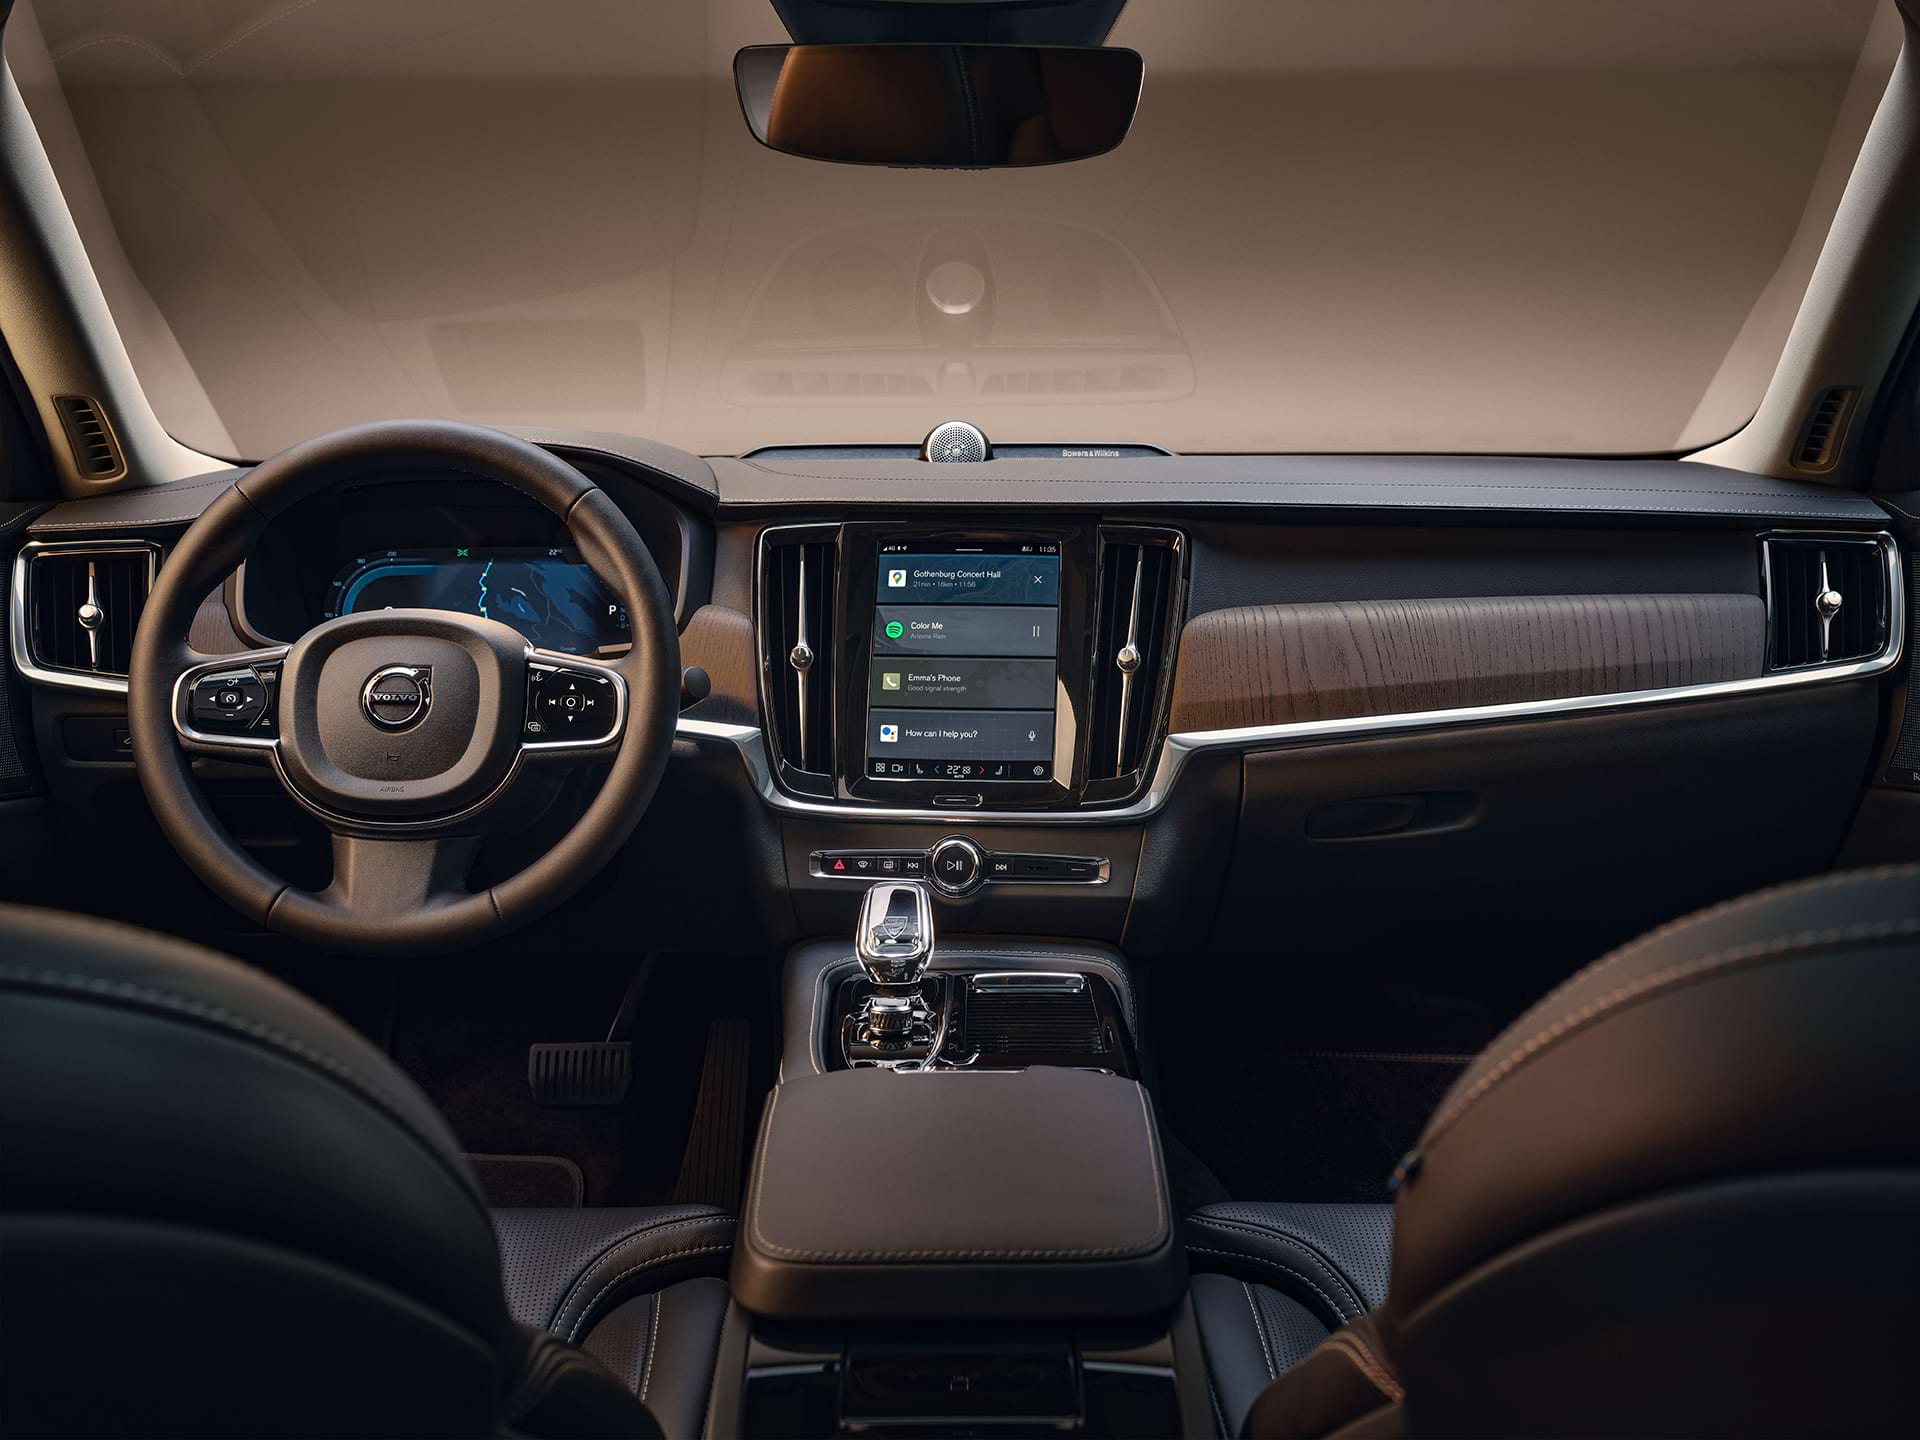 Το ταμπλό, η κεντρική οθόνη, ο επιλογέας ταχυτήτων, η οθόνη του οδηγού και το τιμόνι ενός αυτοκινήτου σεντάν της Volvo.